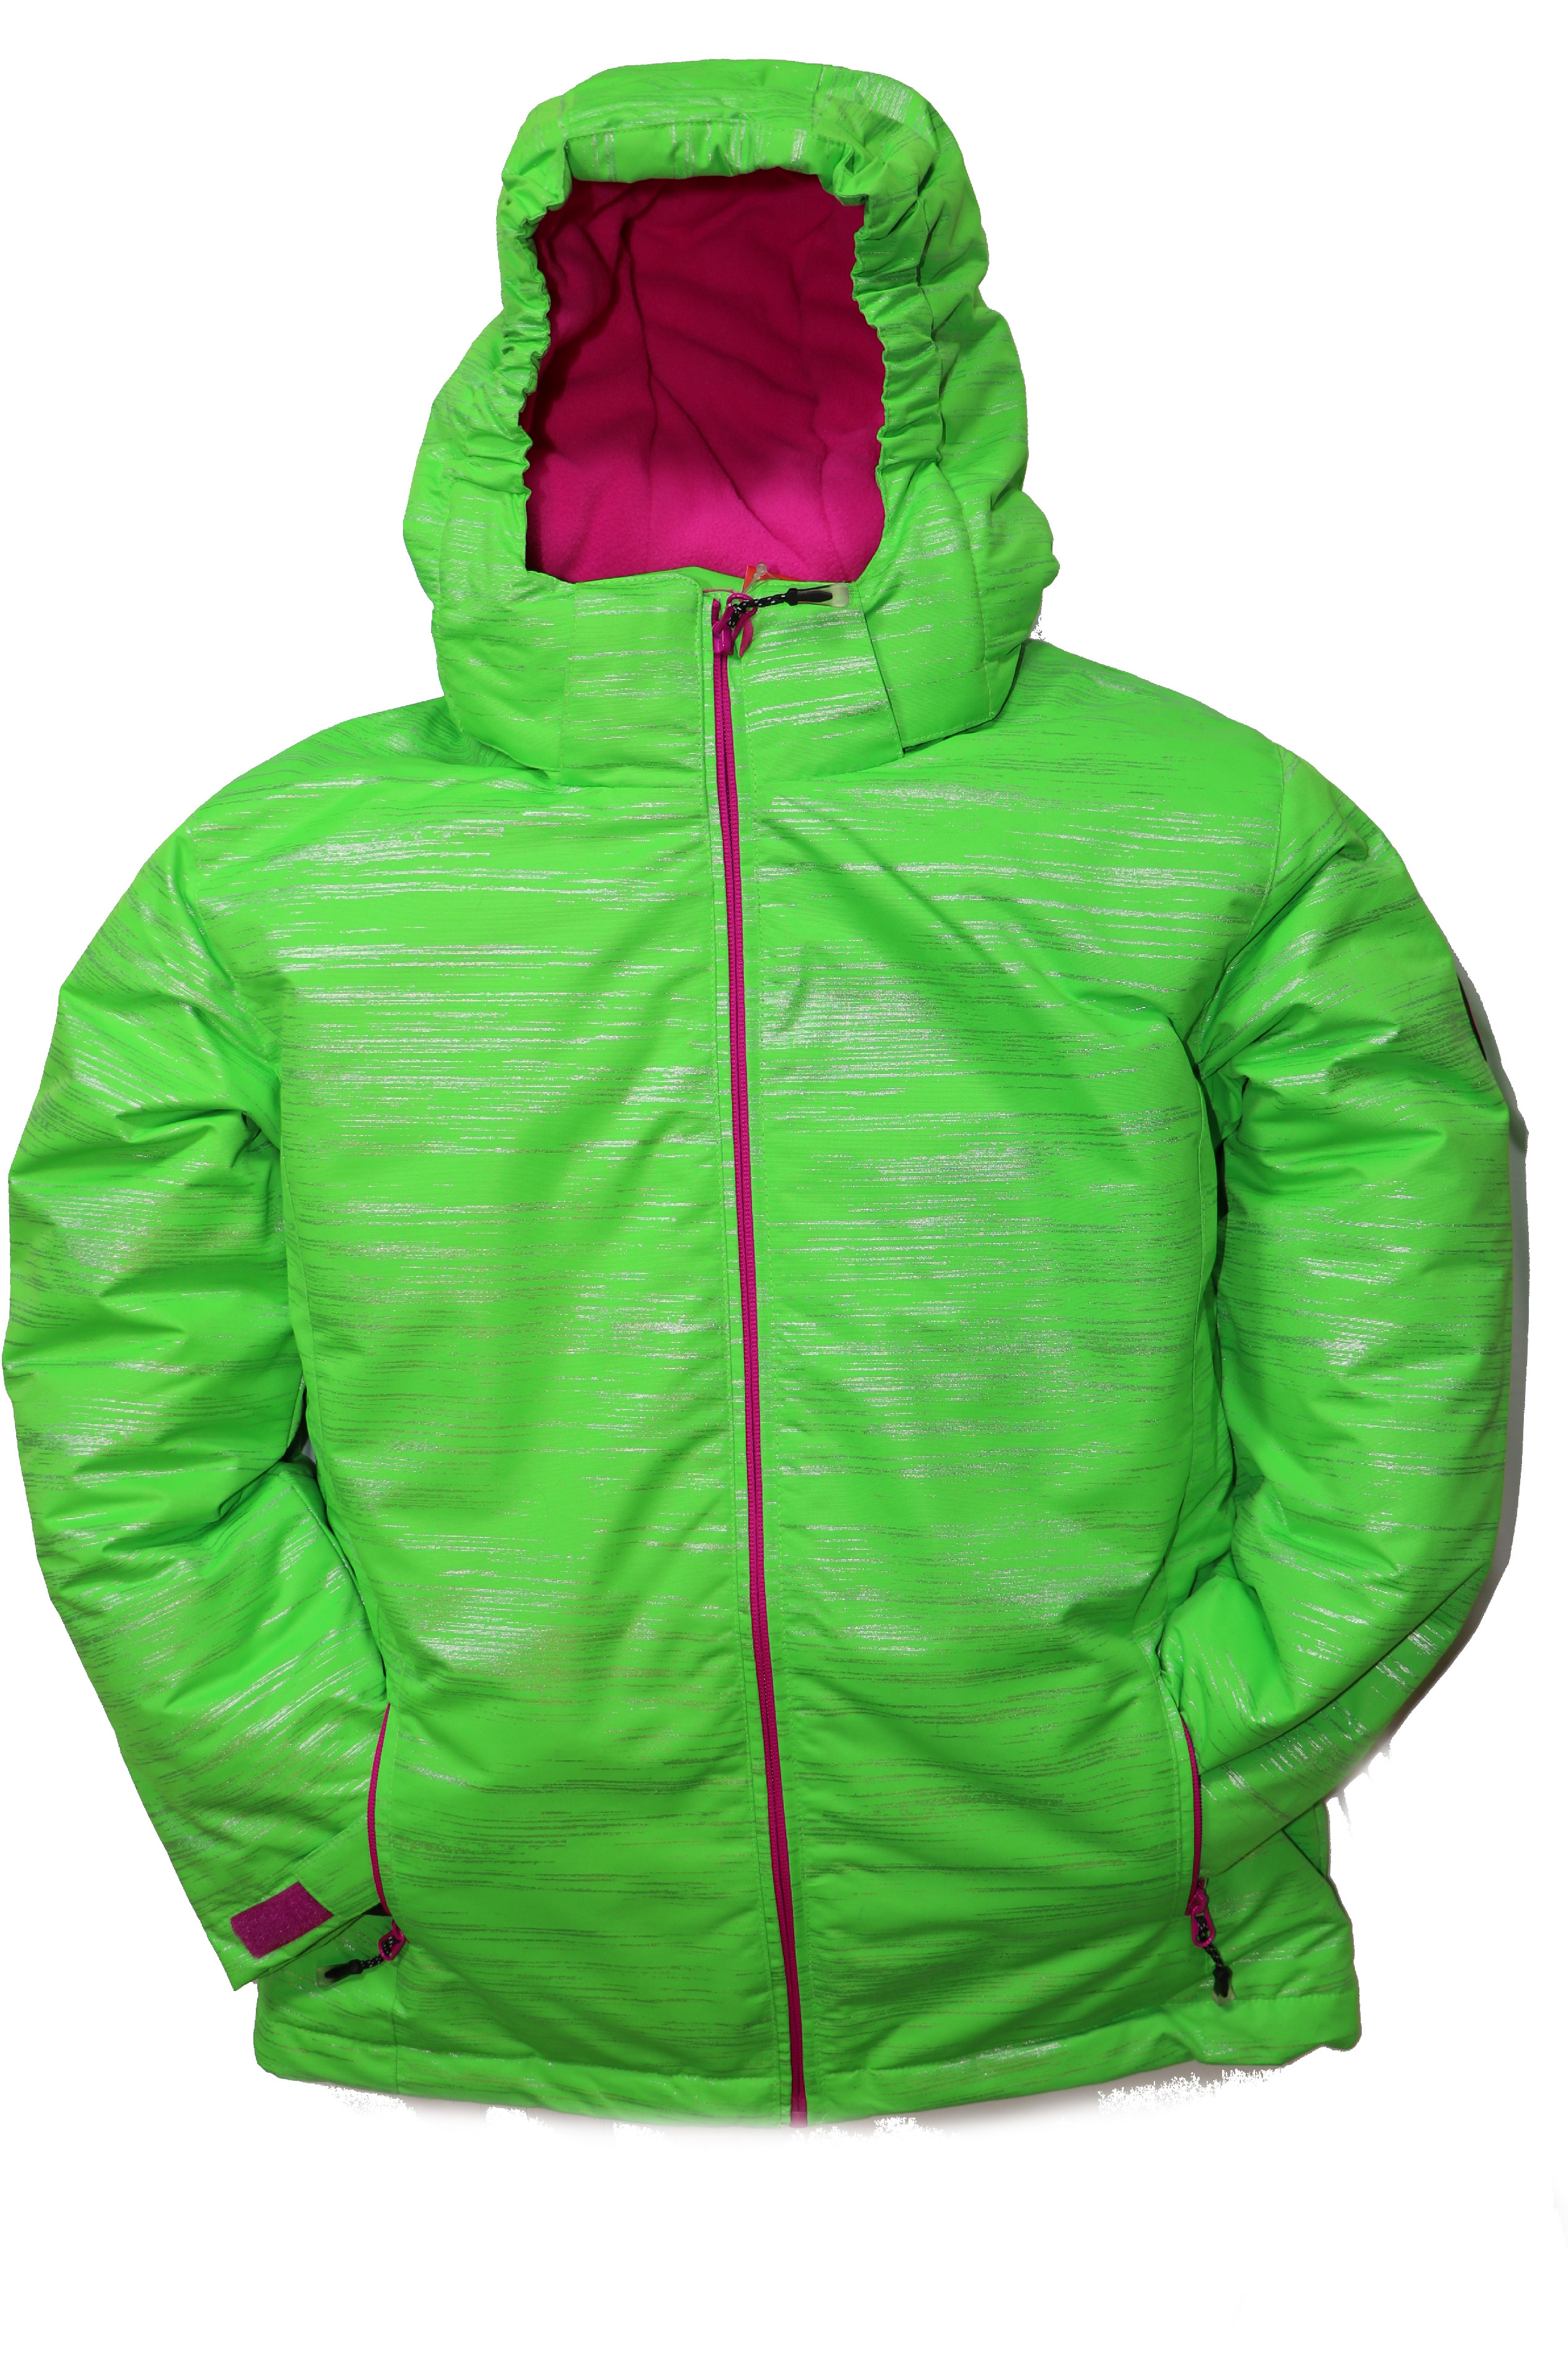 Dětská zimní bunda volného střihu HA04-M2 zelená vel. 134-164 cm Barva: Zelená, Velikost: 158 - 164 cm